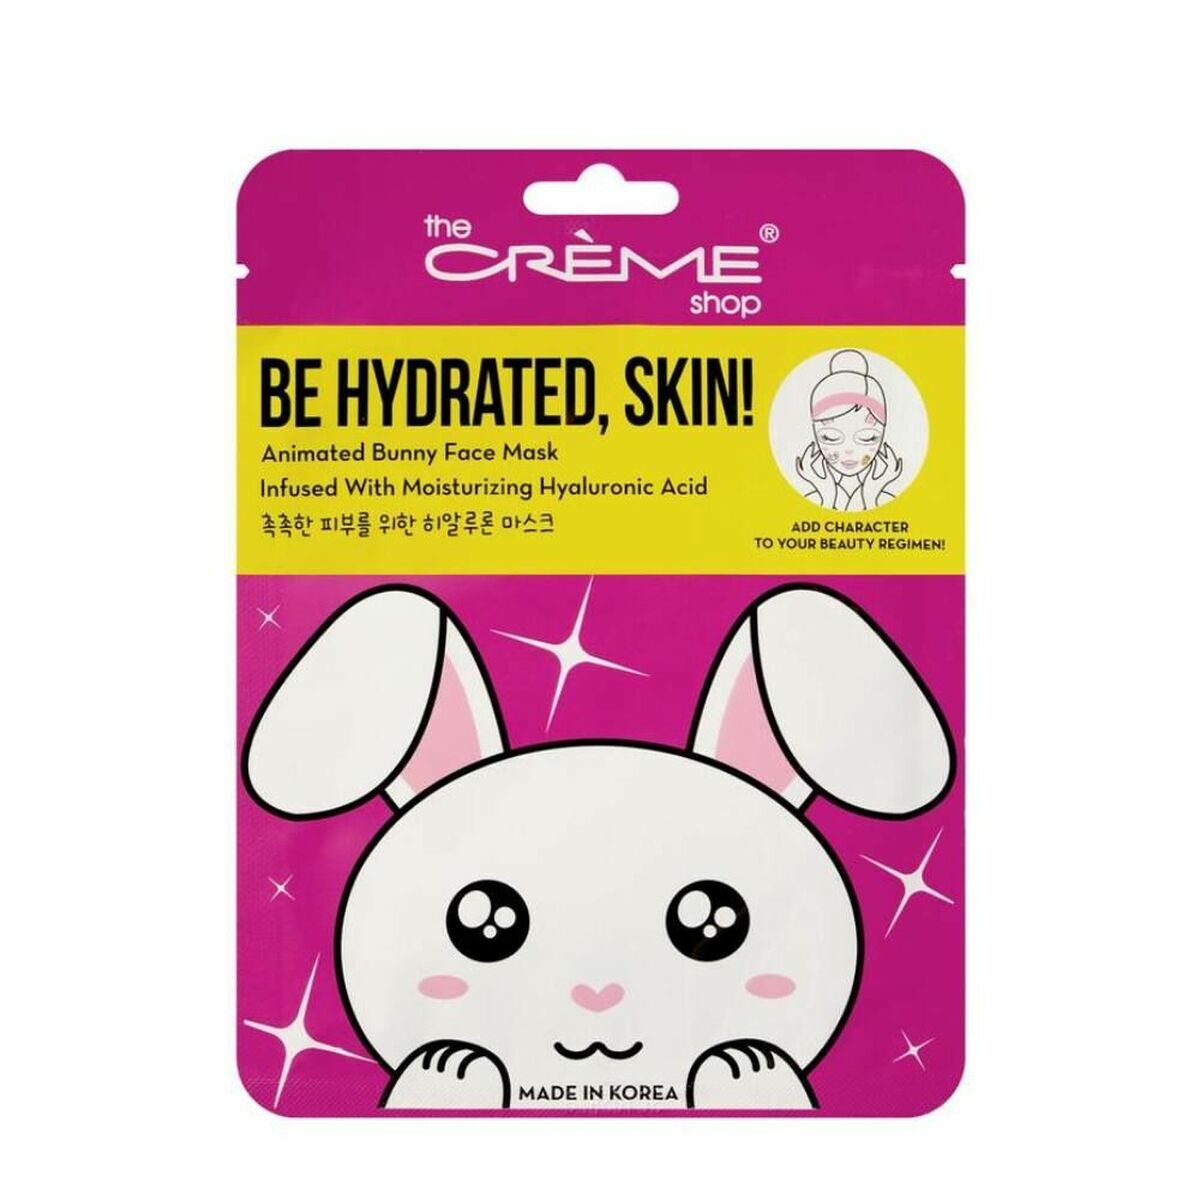 Maska obličeje, obchod Crème bude hydratovaný, kůže! Bunny (25 g)